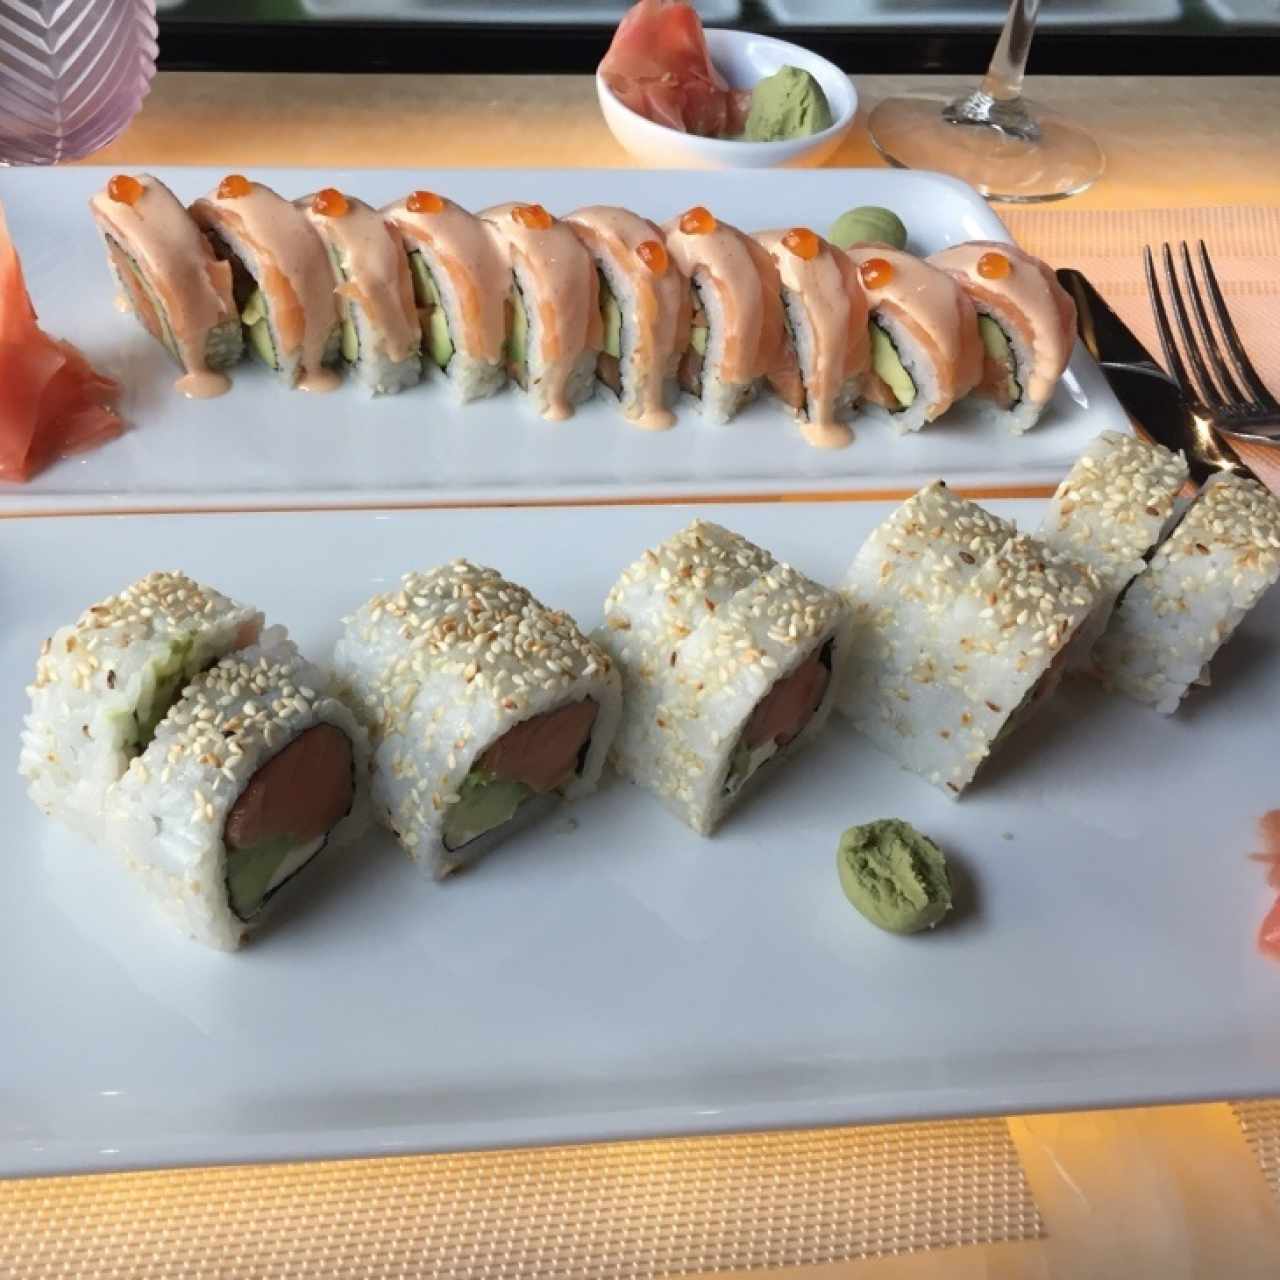 Sushi rolls/Makis - Spicy sake roll y filadelfia 